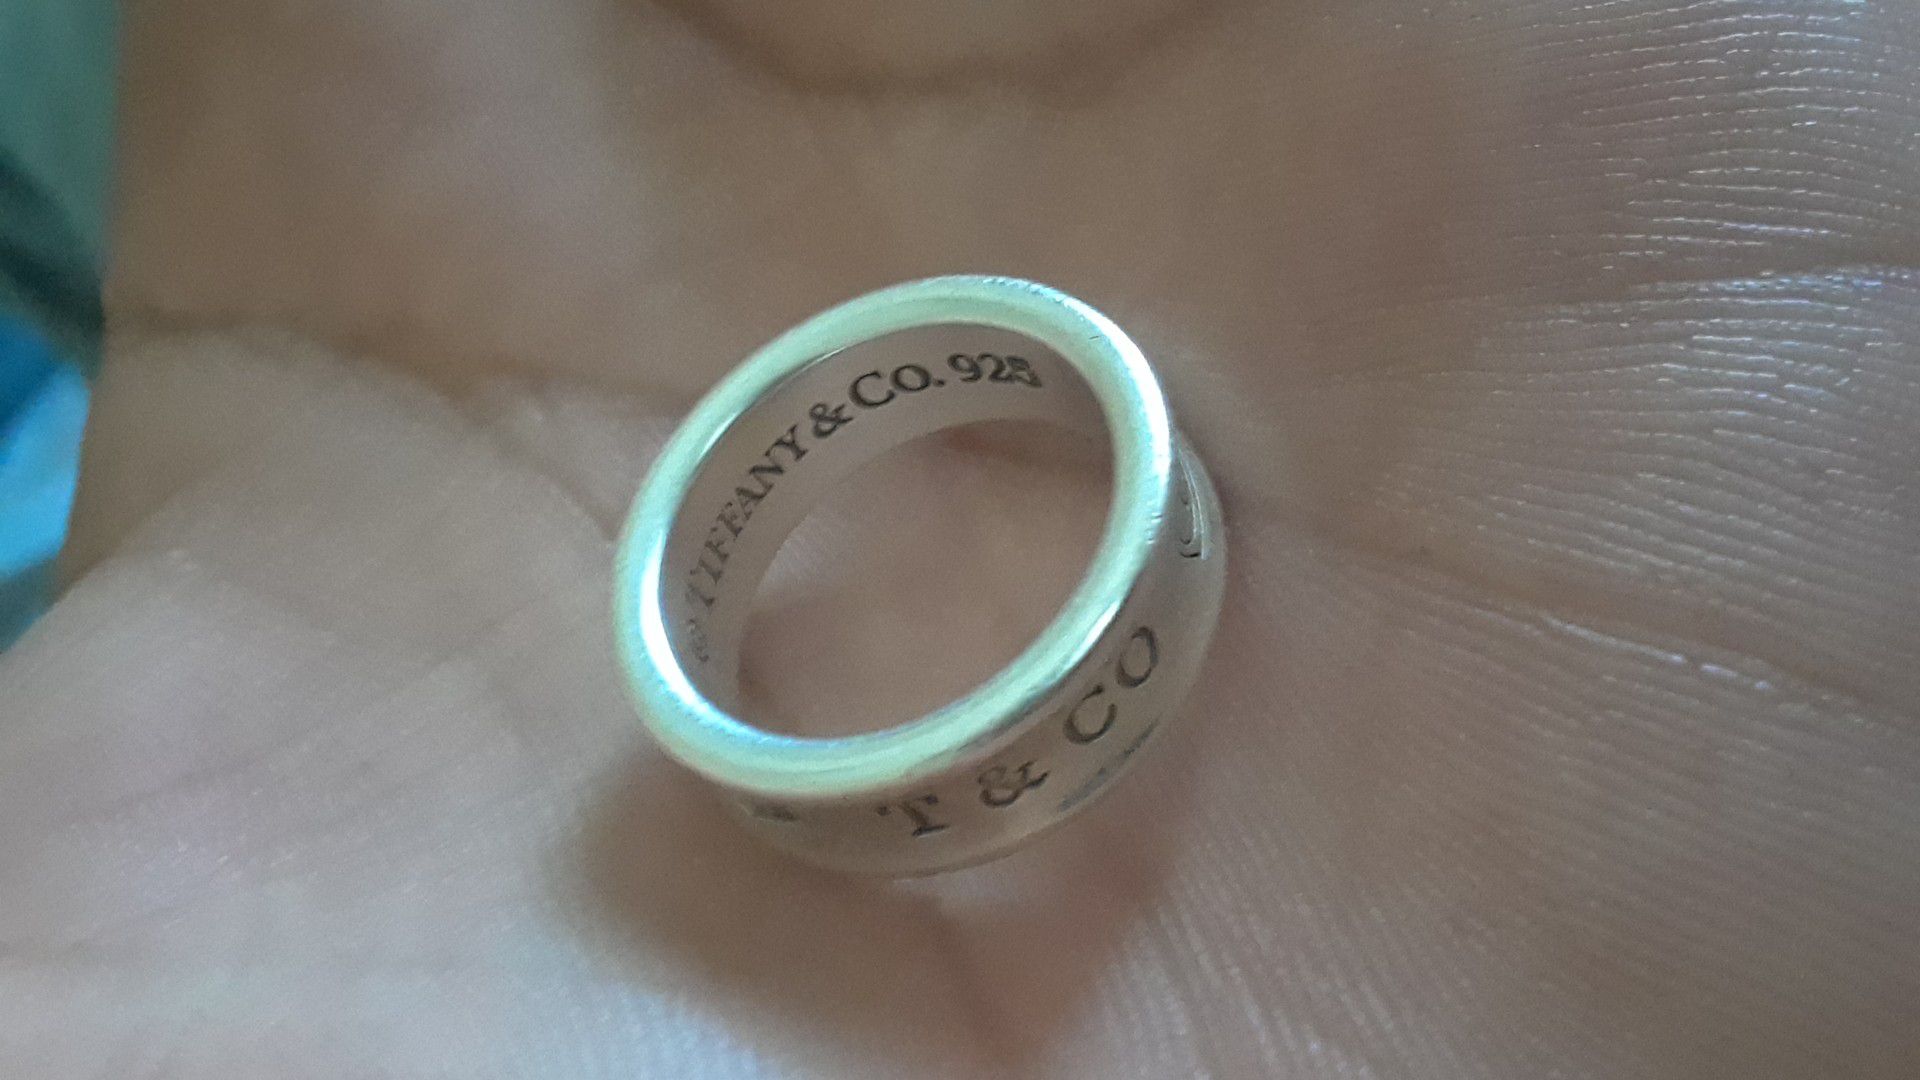 Tiffany & CO ring 1837